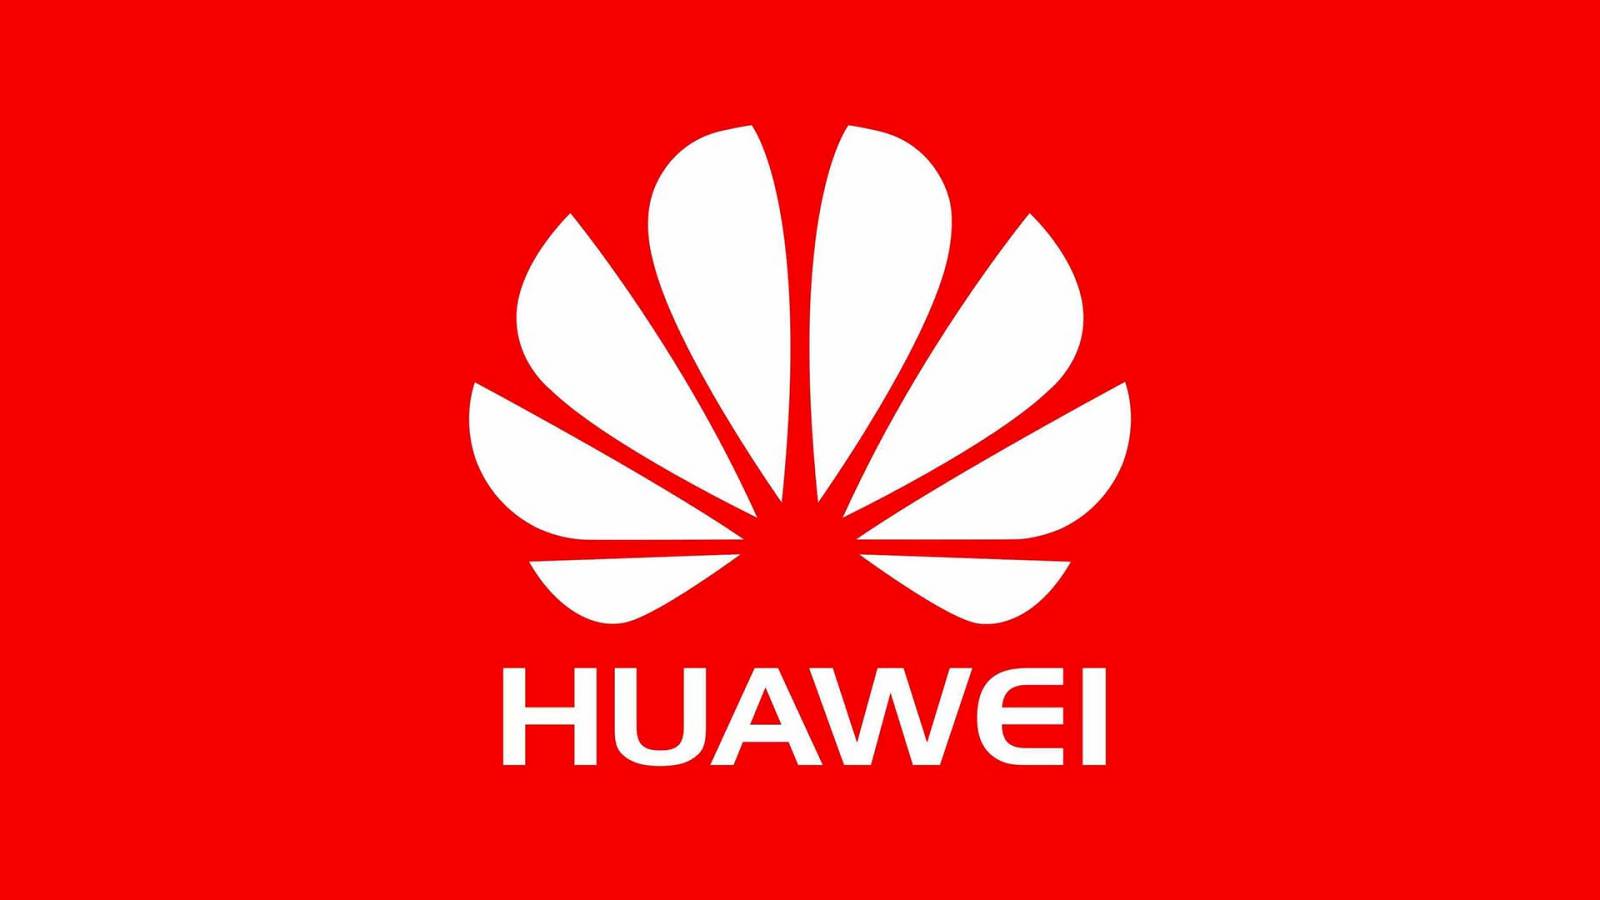 Huawei impact